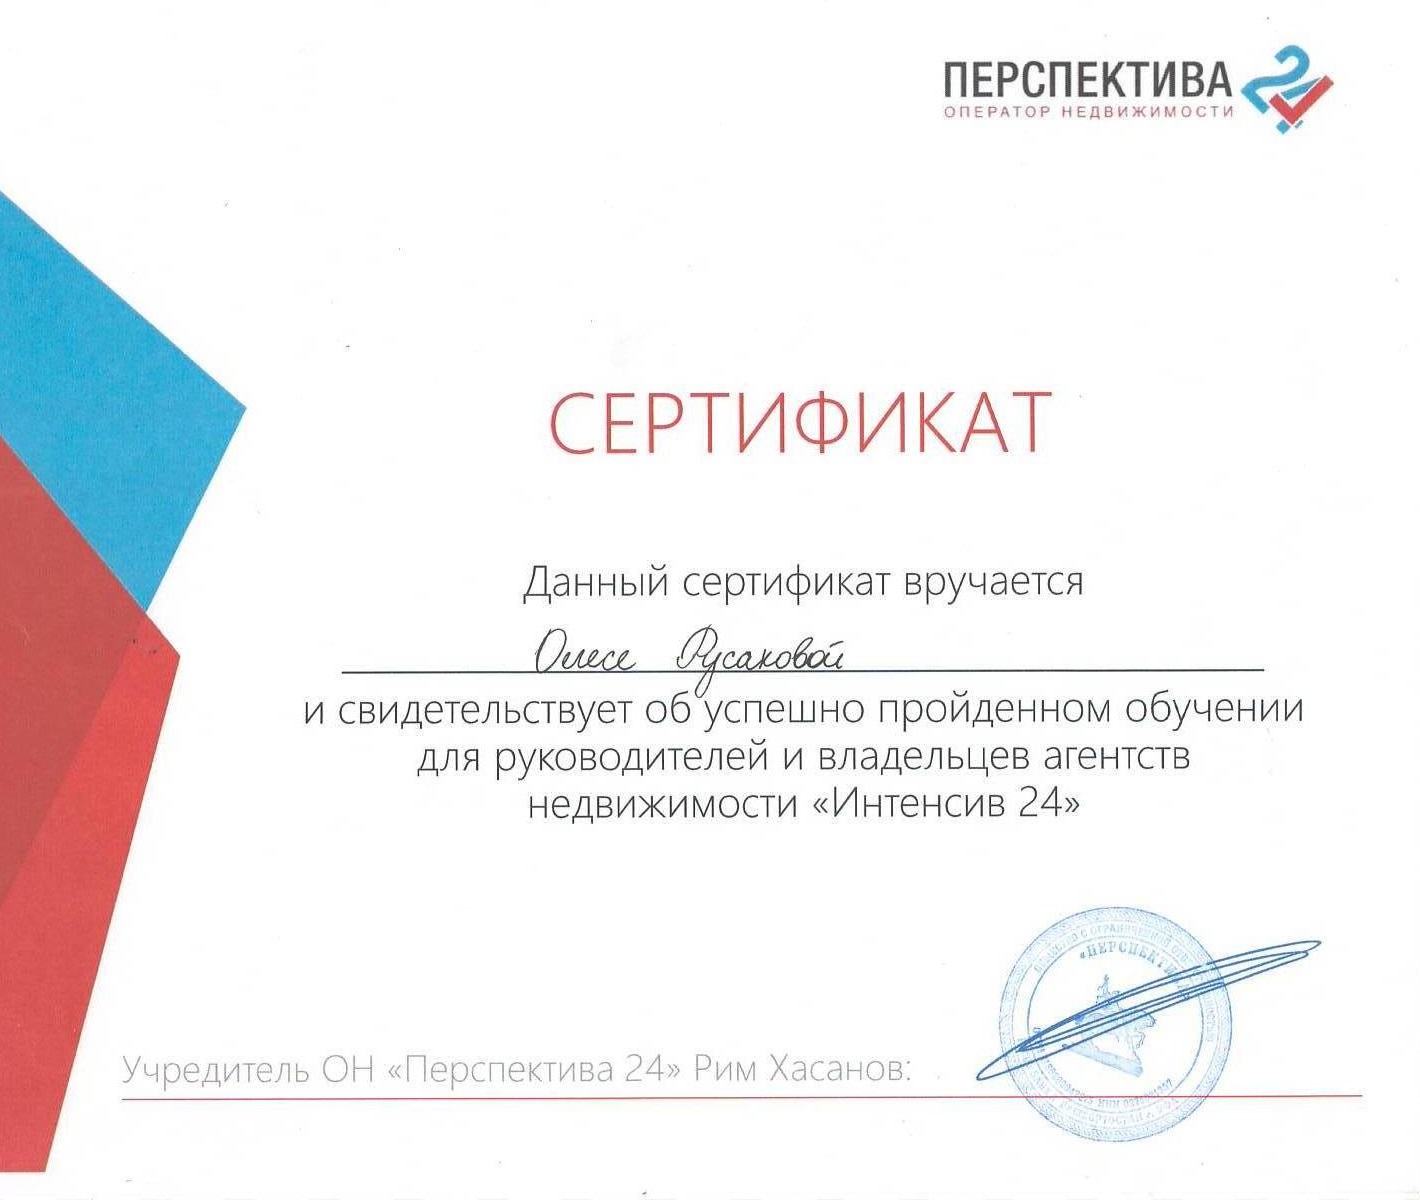 Сертификат обучения руководителей агентств